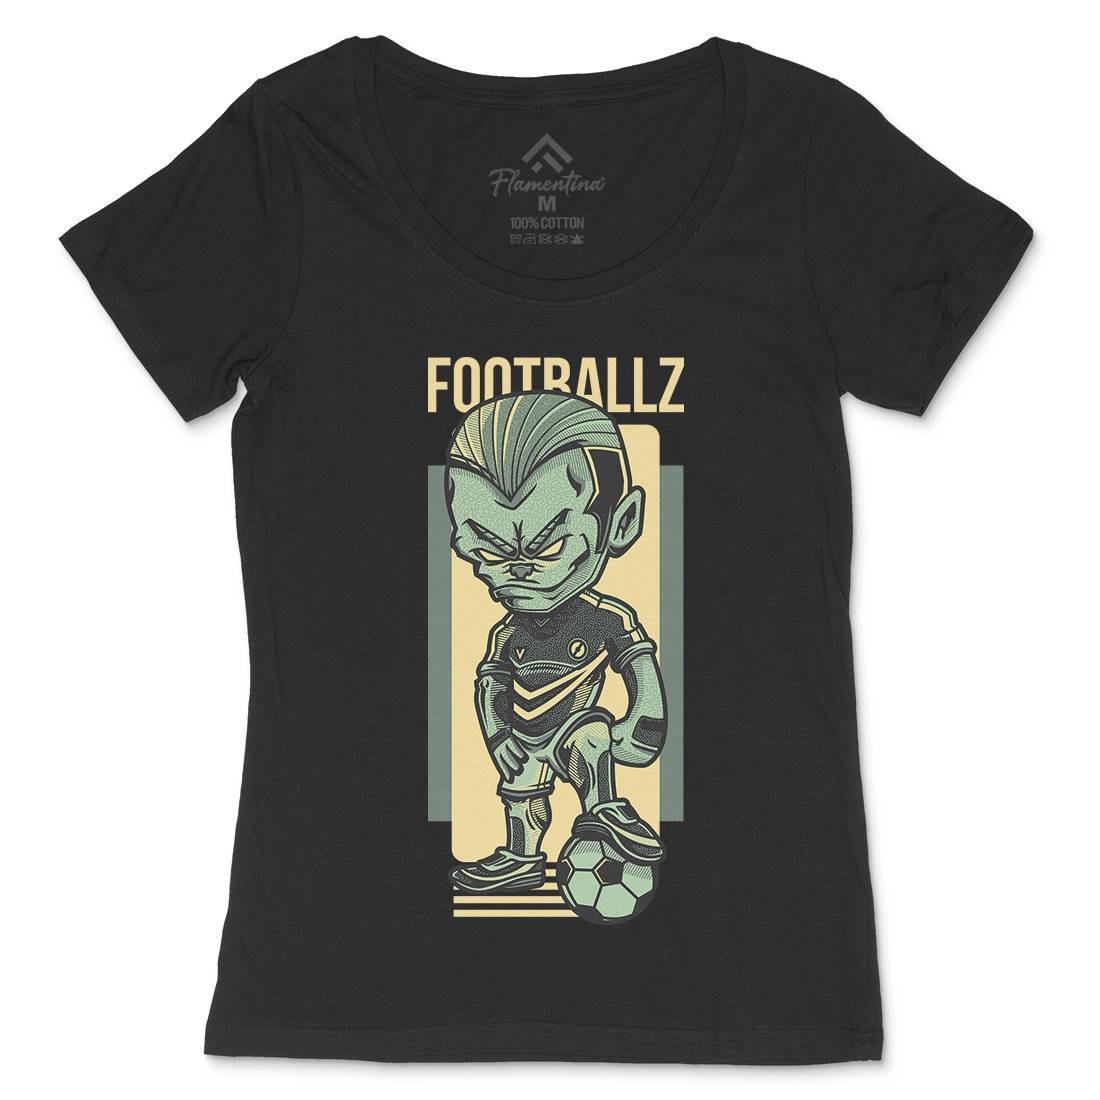 Football Womens Scoop Neck T-Shirt Sport D779